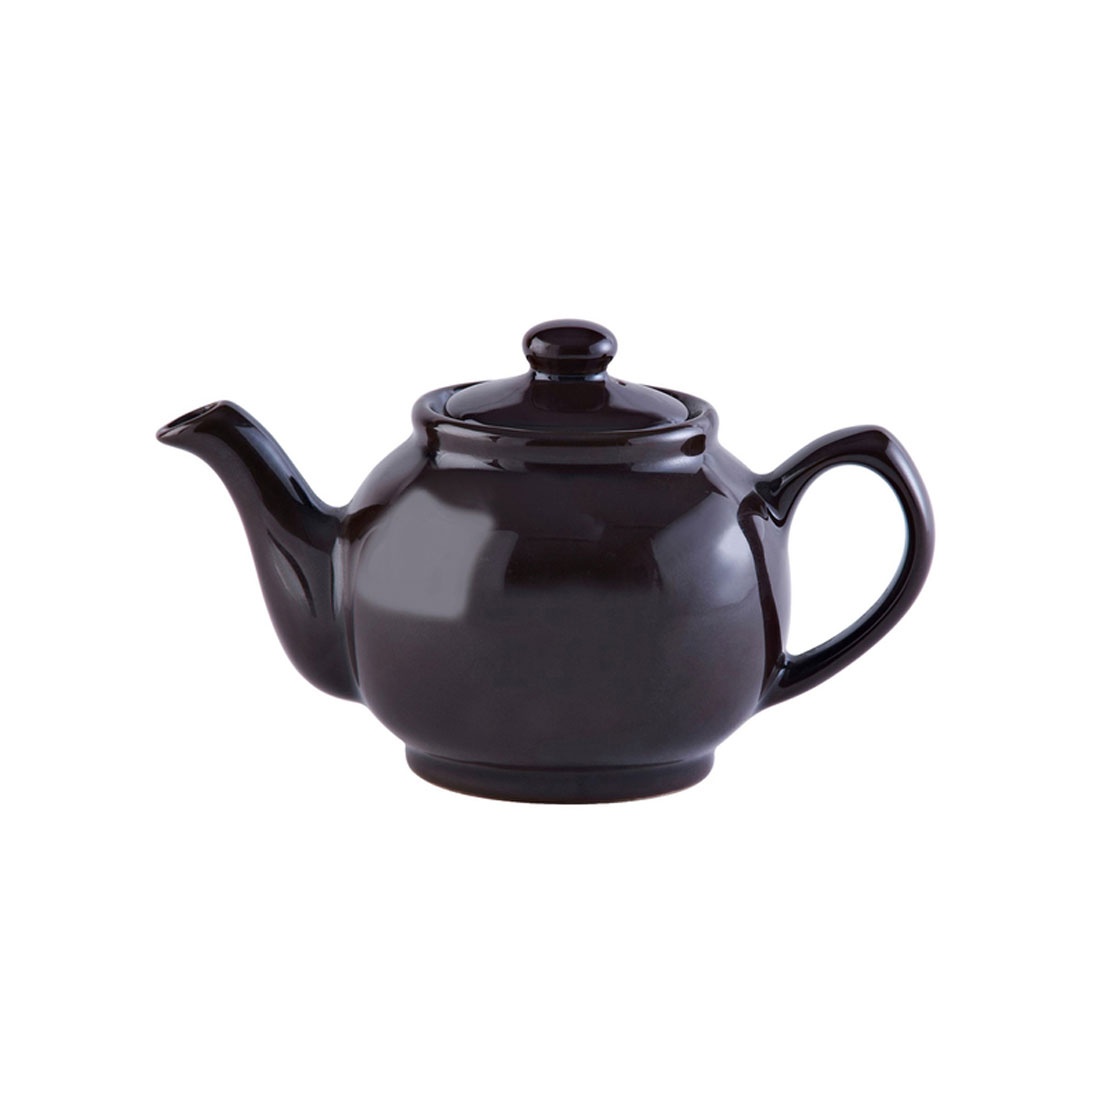 Teekanne klassisch braun 440 ml von Price & Kensington